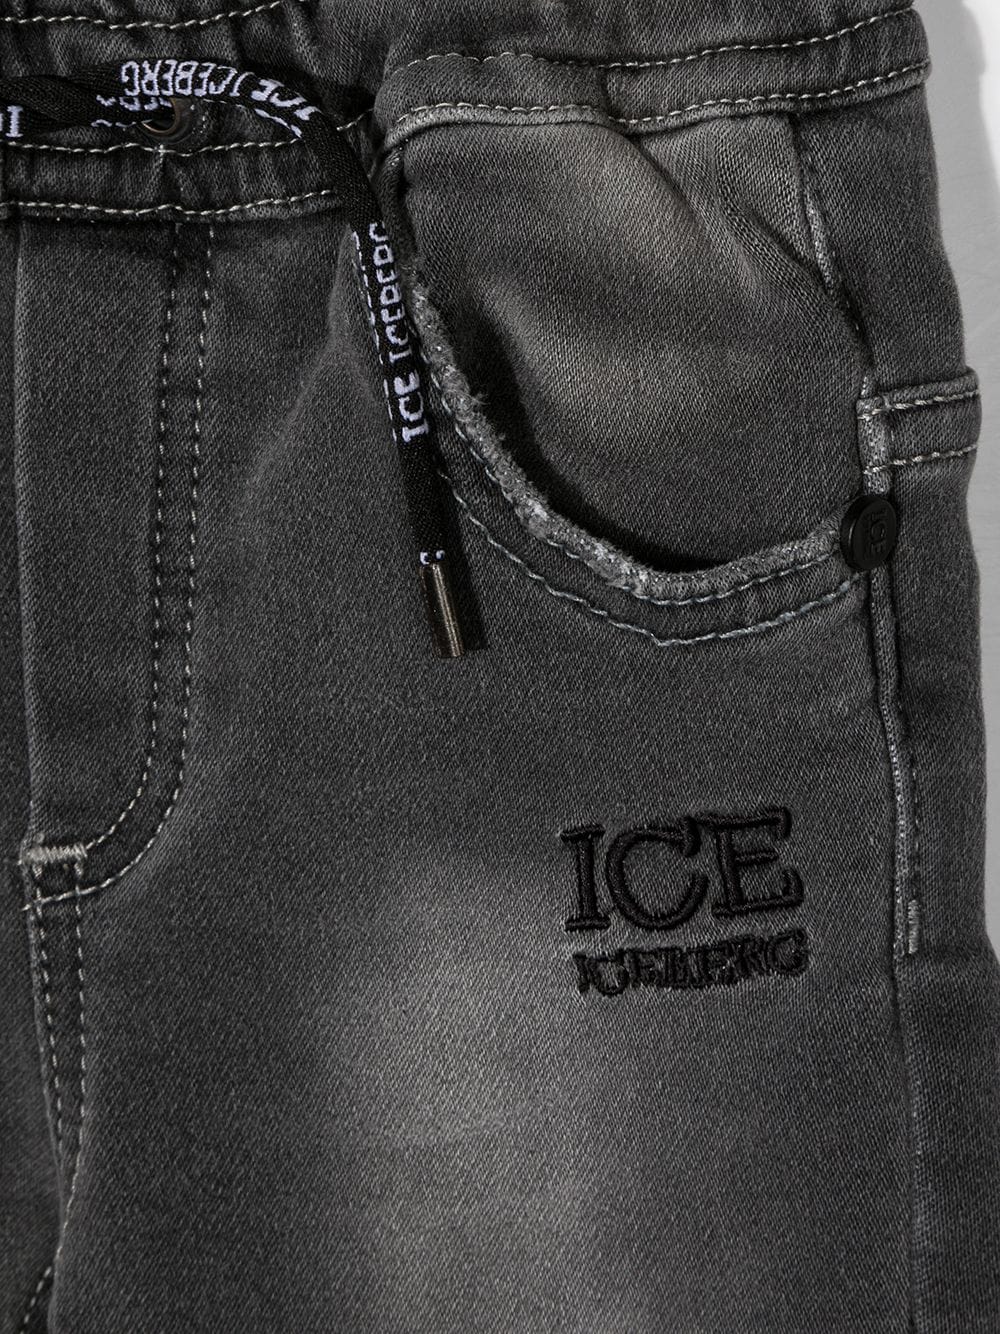 фото Iceberg kids джинсы скинни с вышитым логотипом